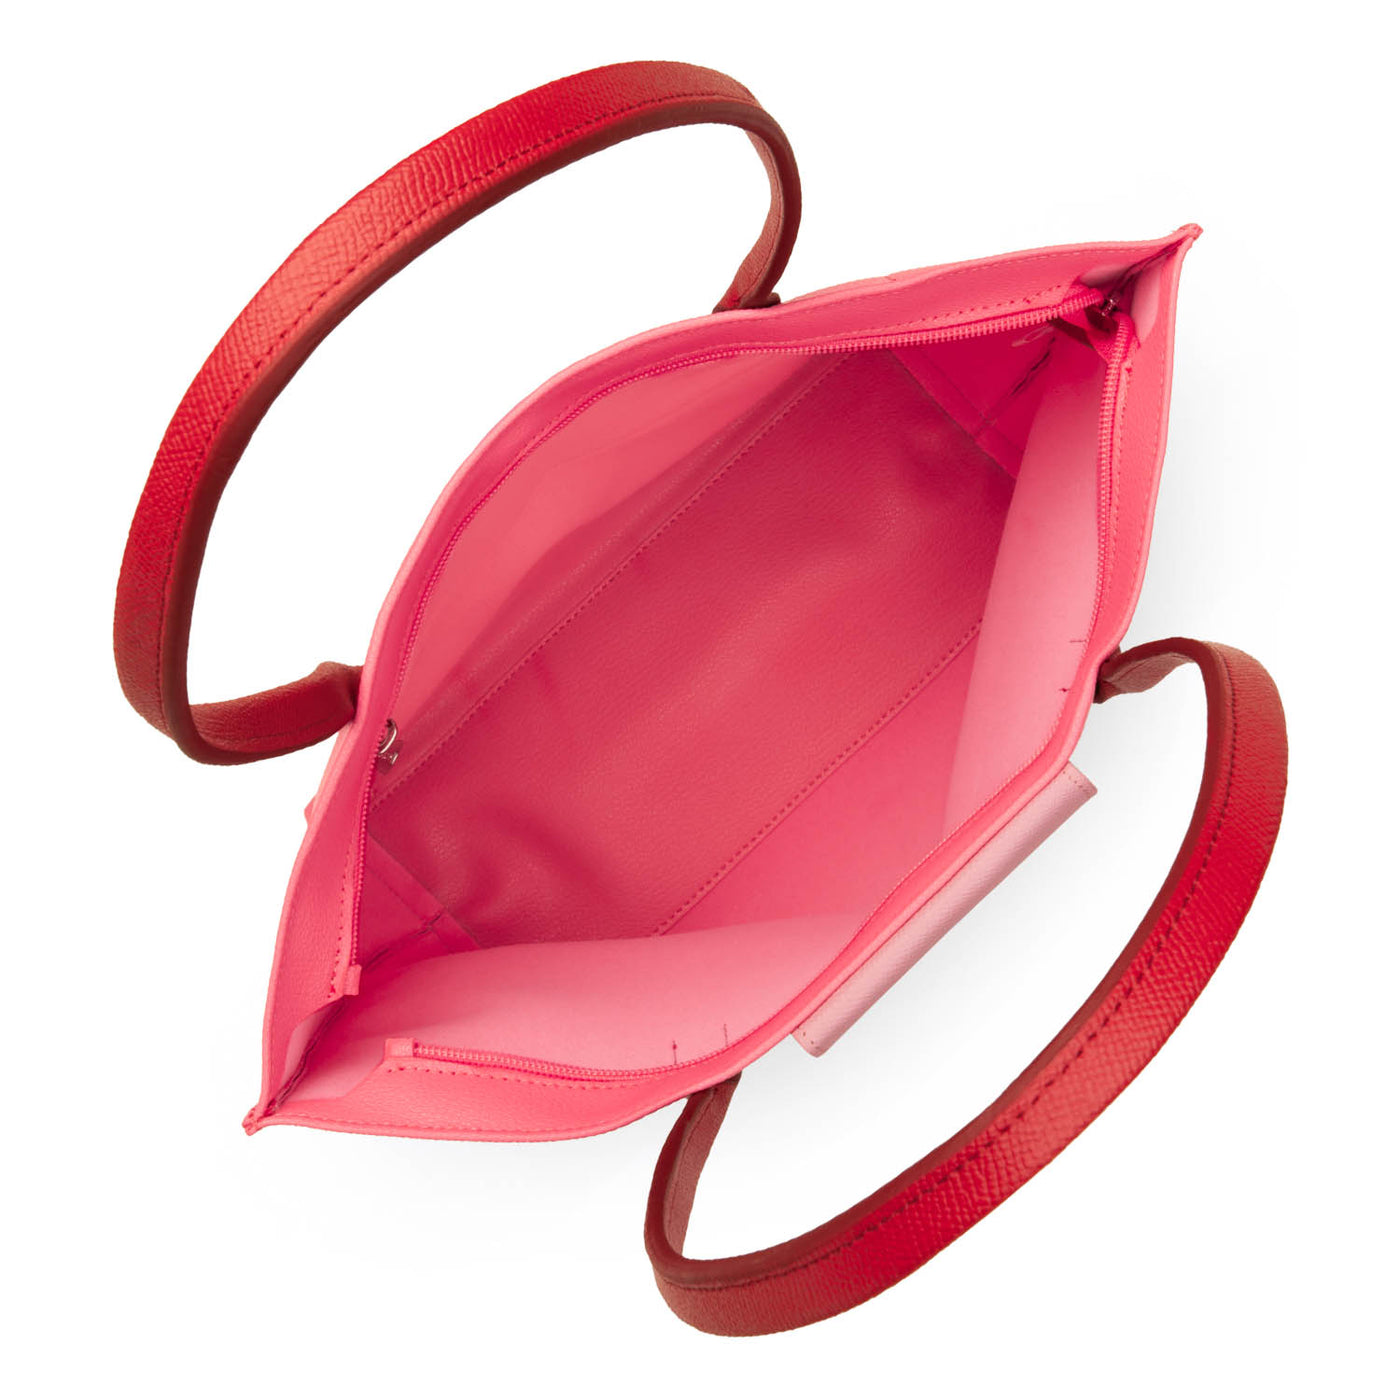 m tote bag - maya #couleur_rose-fonc-rose-rouge